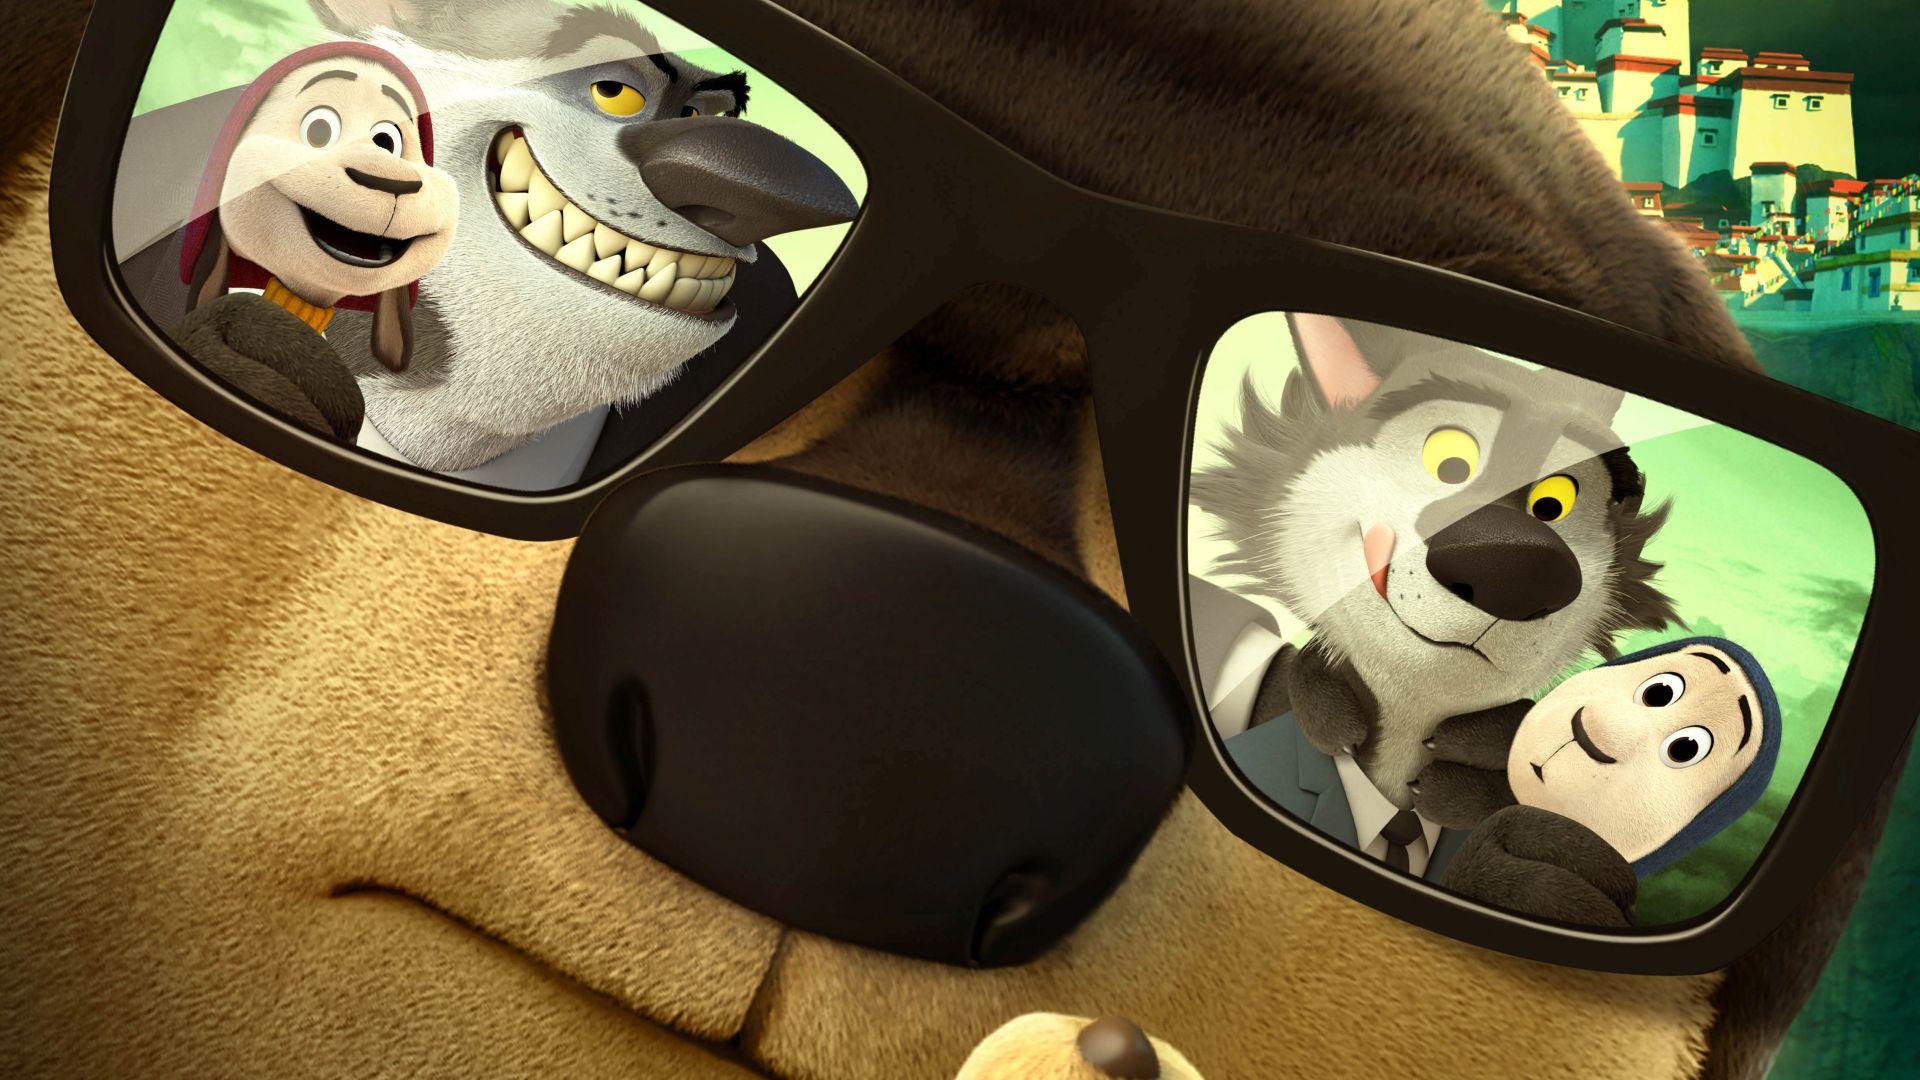 Рок Пес, пес, очки, лучшие мультфильмы 2016, Rock Dog, dog, glasses, best animations of 2016 (horizontal)